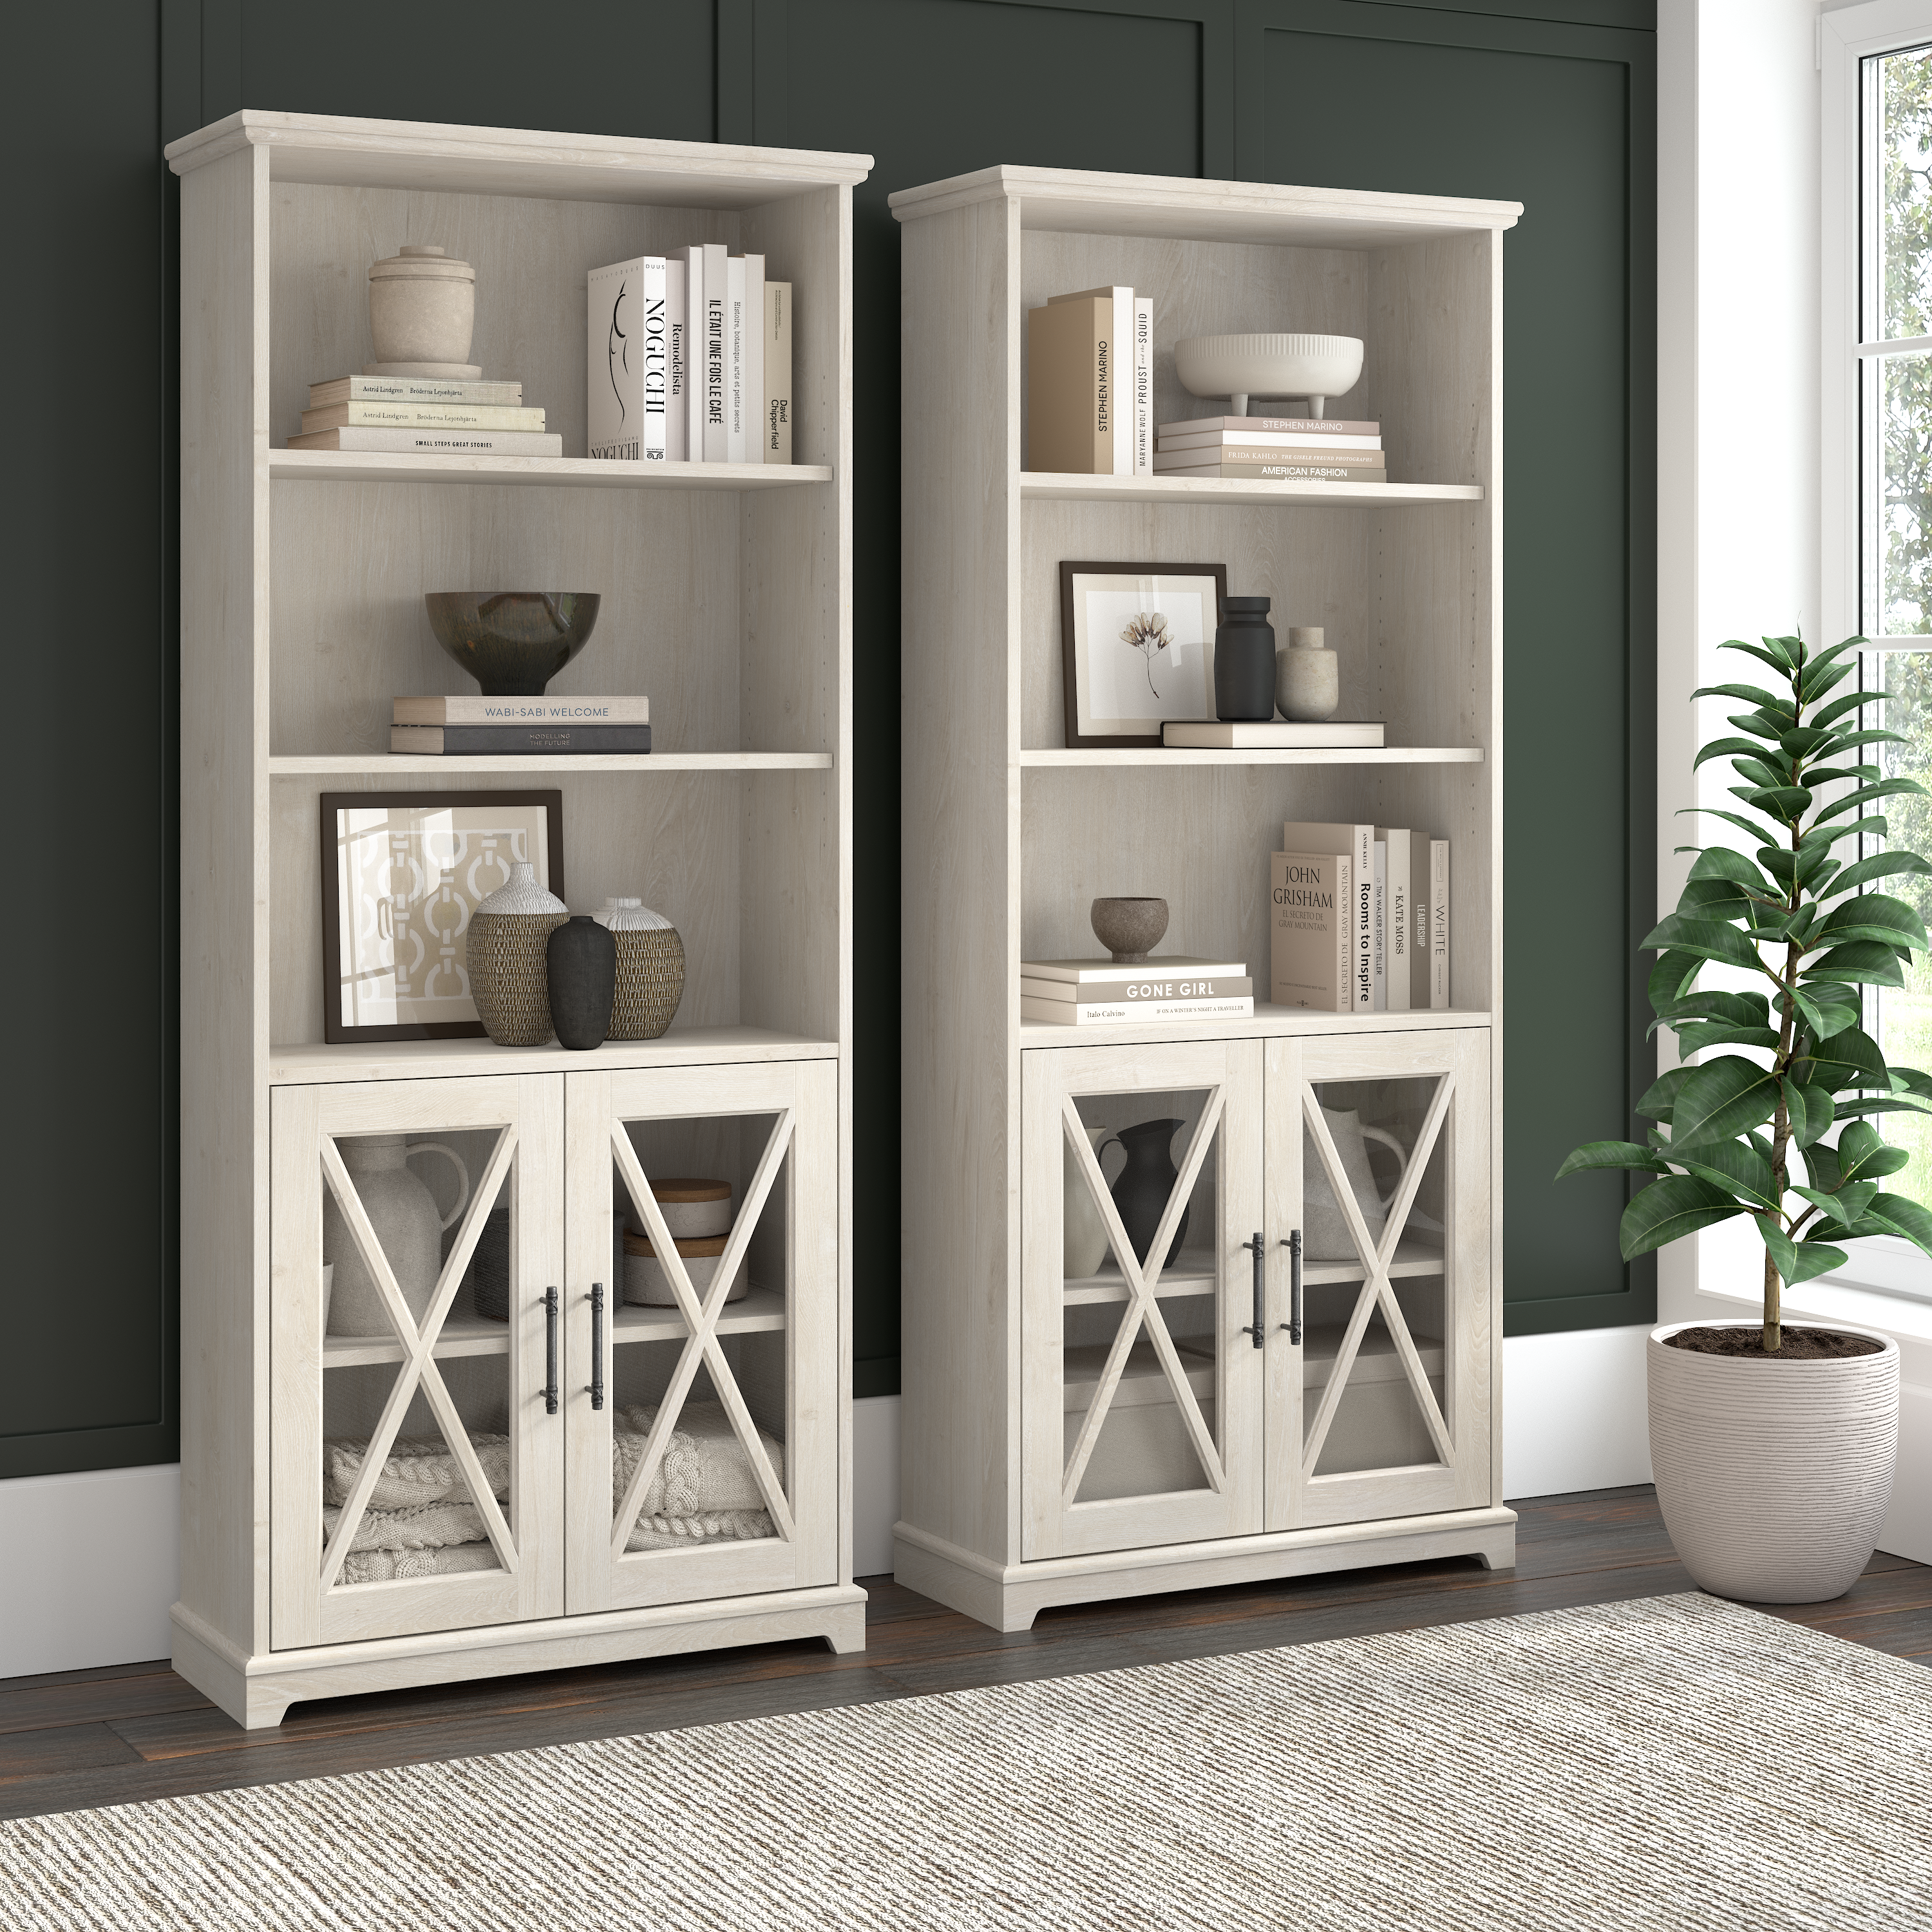 Shop Bush Furniture Lennox Farmhouse 5 Shelf Bookcase with Glass Doors - Set of 2 01 LEN001LW #color_linen white oak